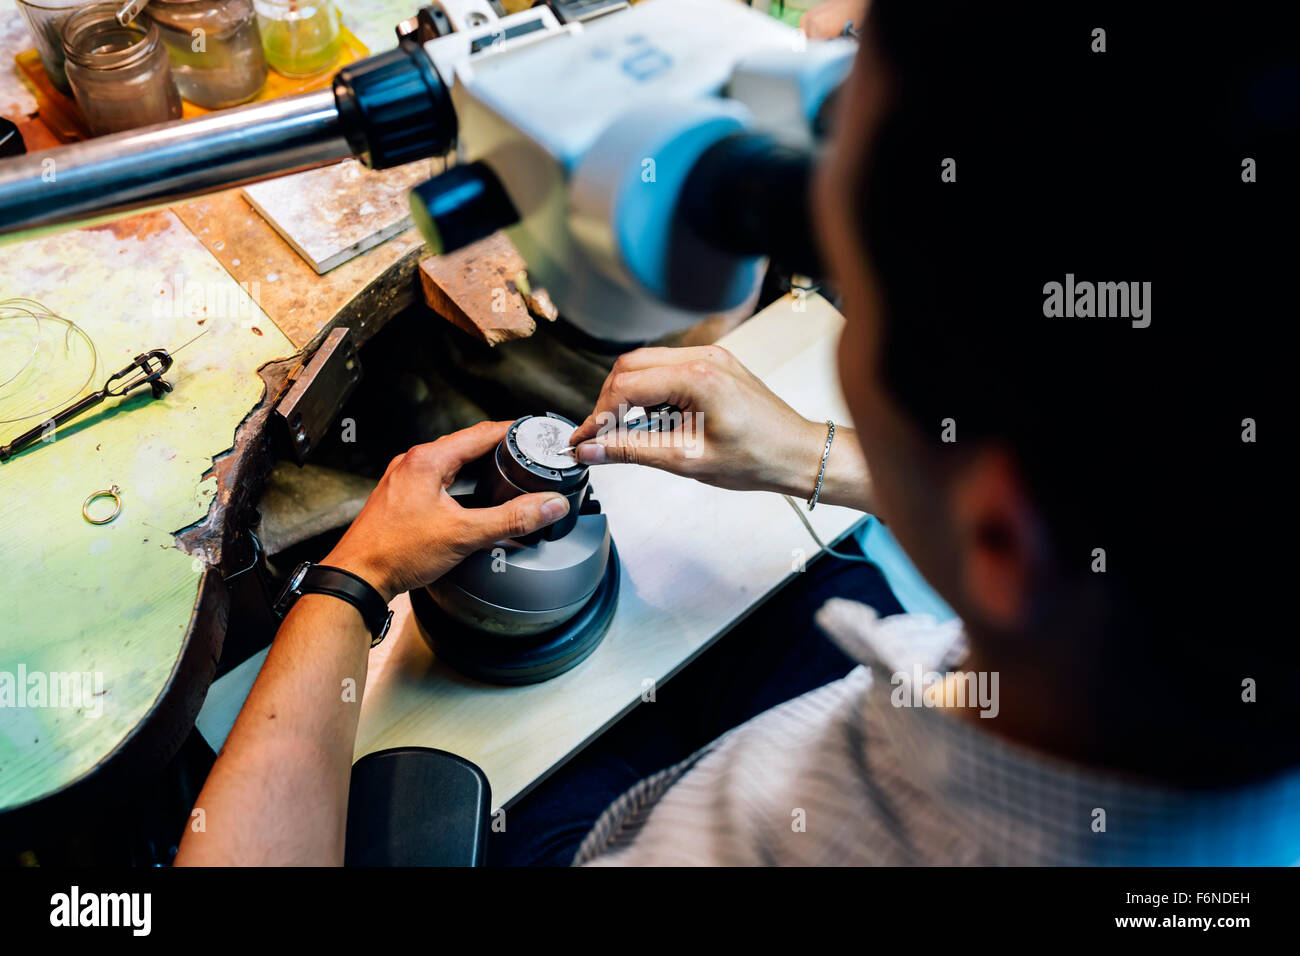 Groupe de travail sur les métaux bijoutier avec appareil optique qui permet un travail de précision Banque D'Images